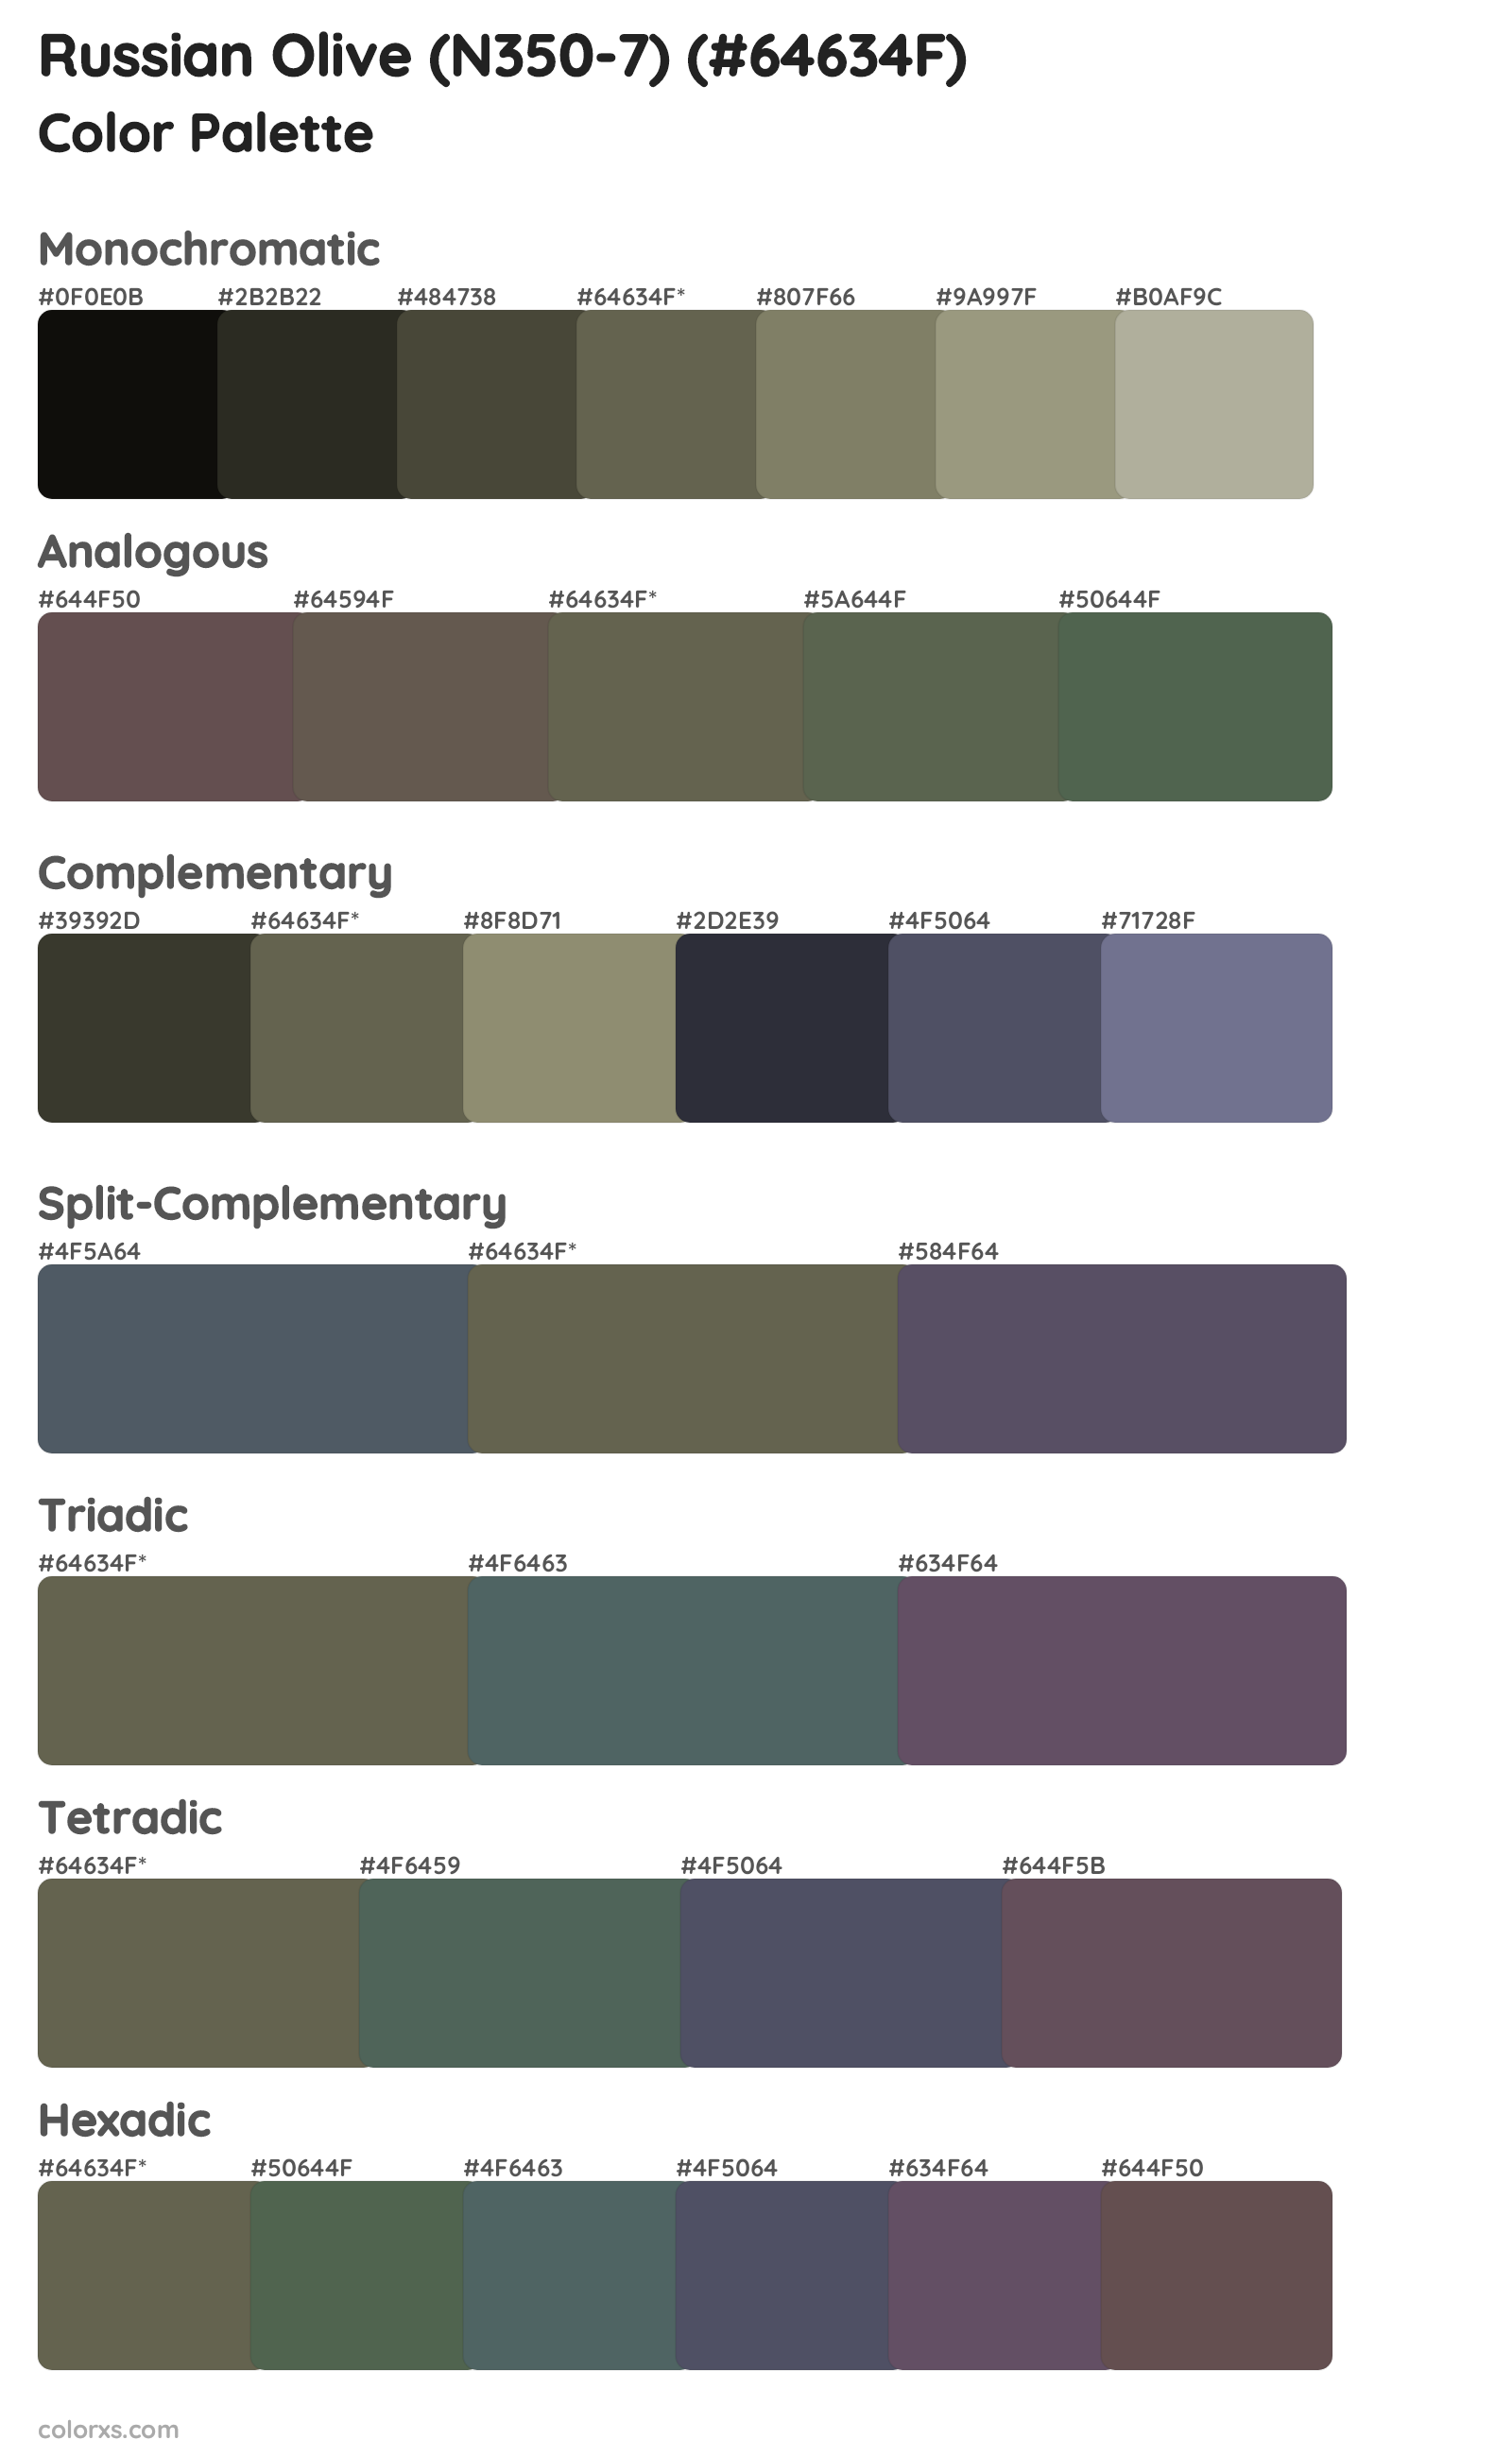 Russian Olive (N350-7) Color Scheme Palettes